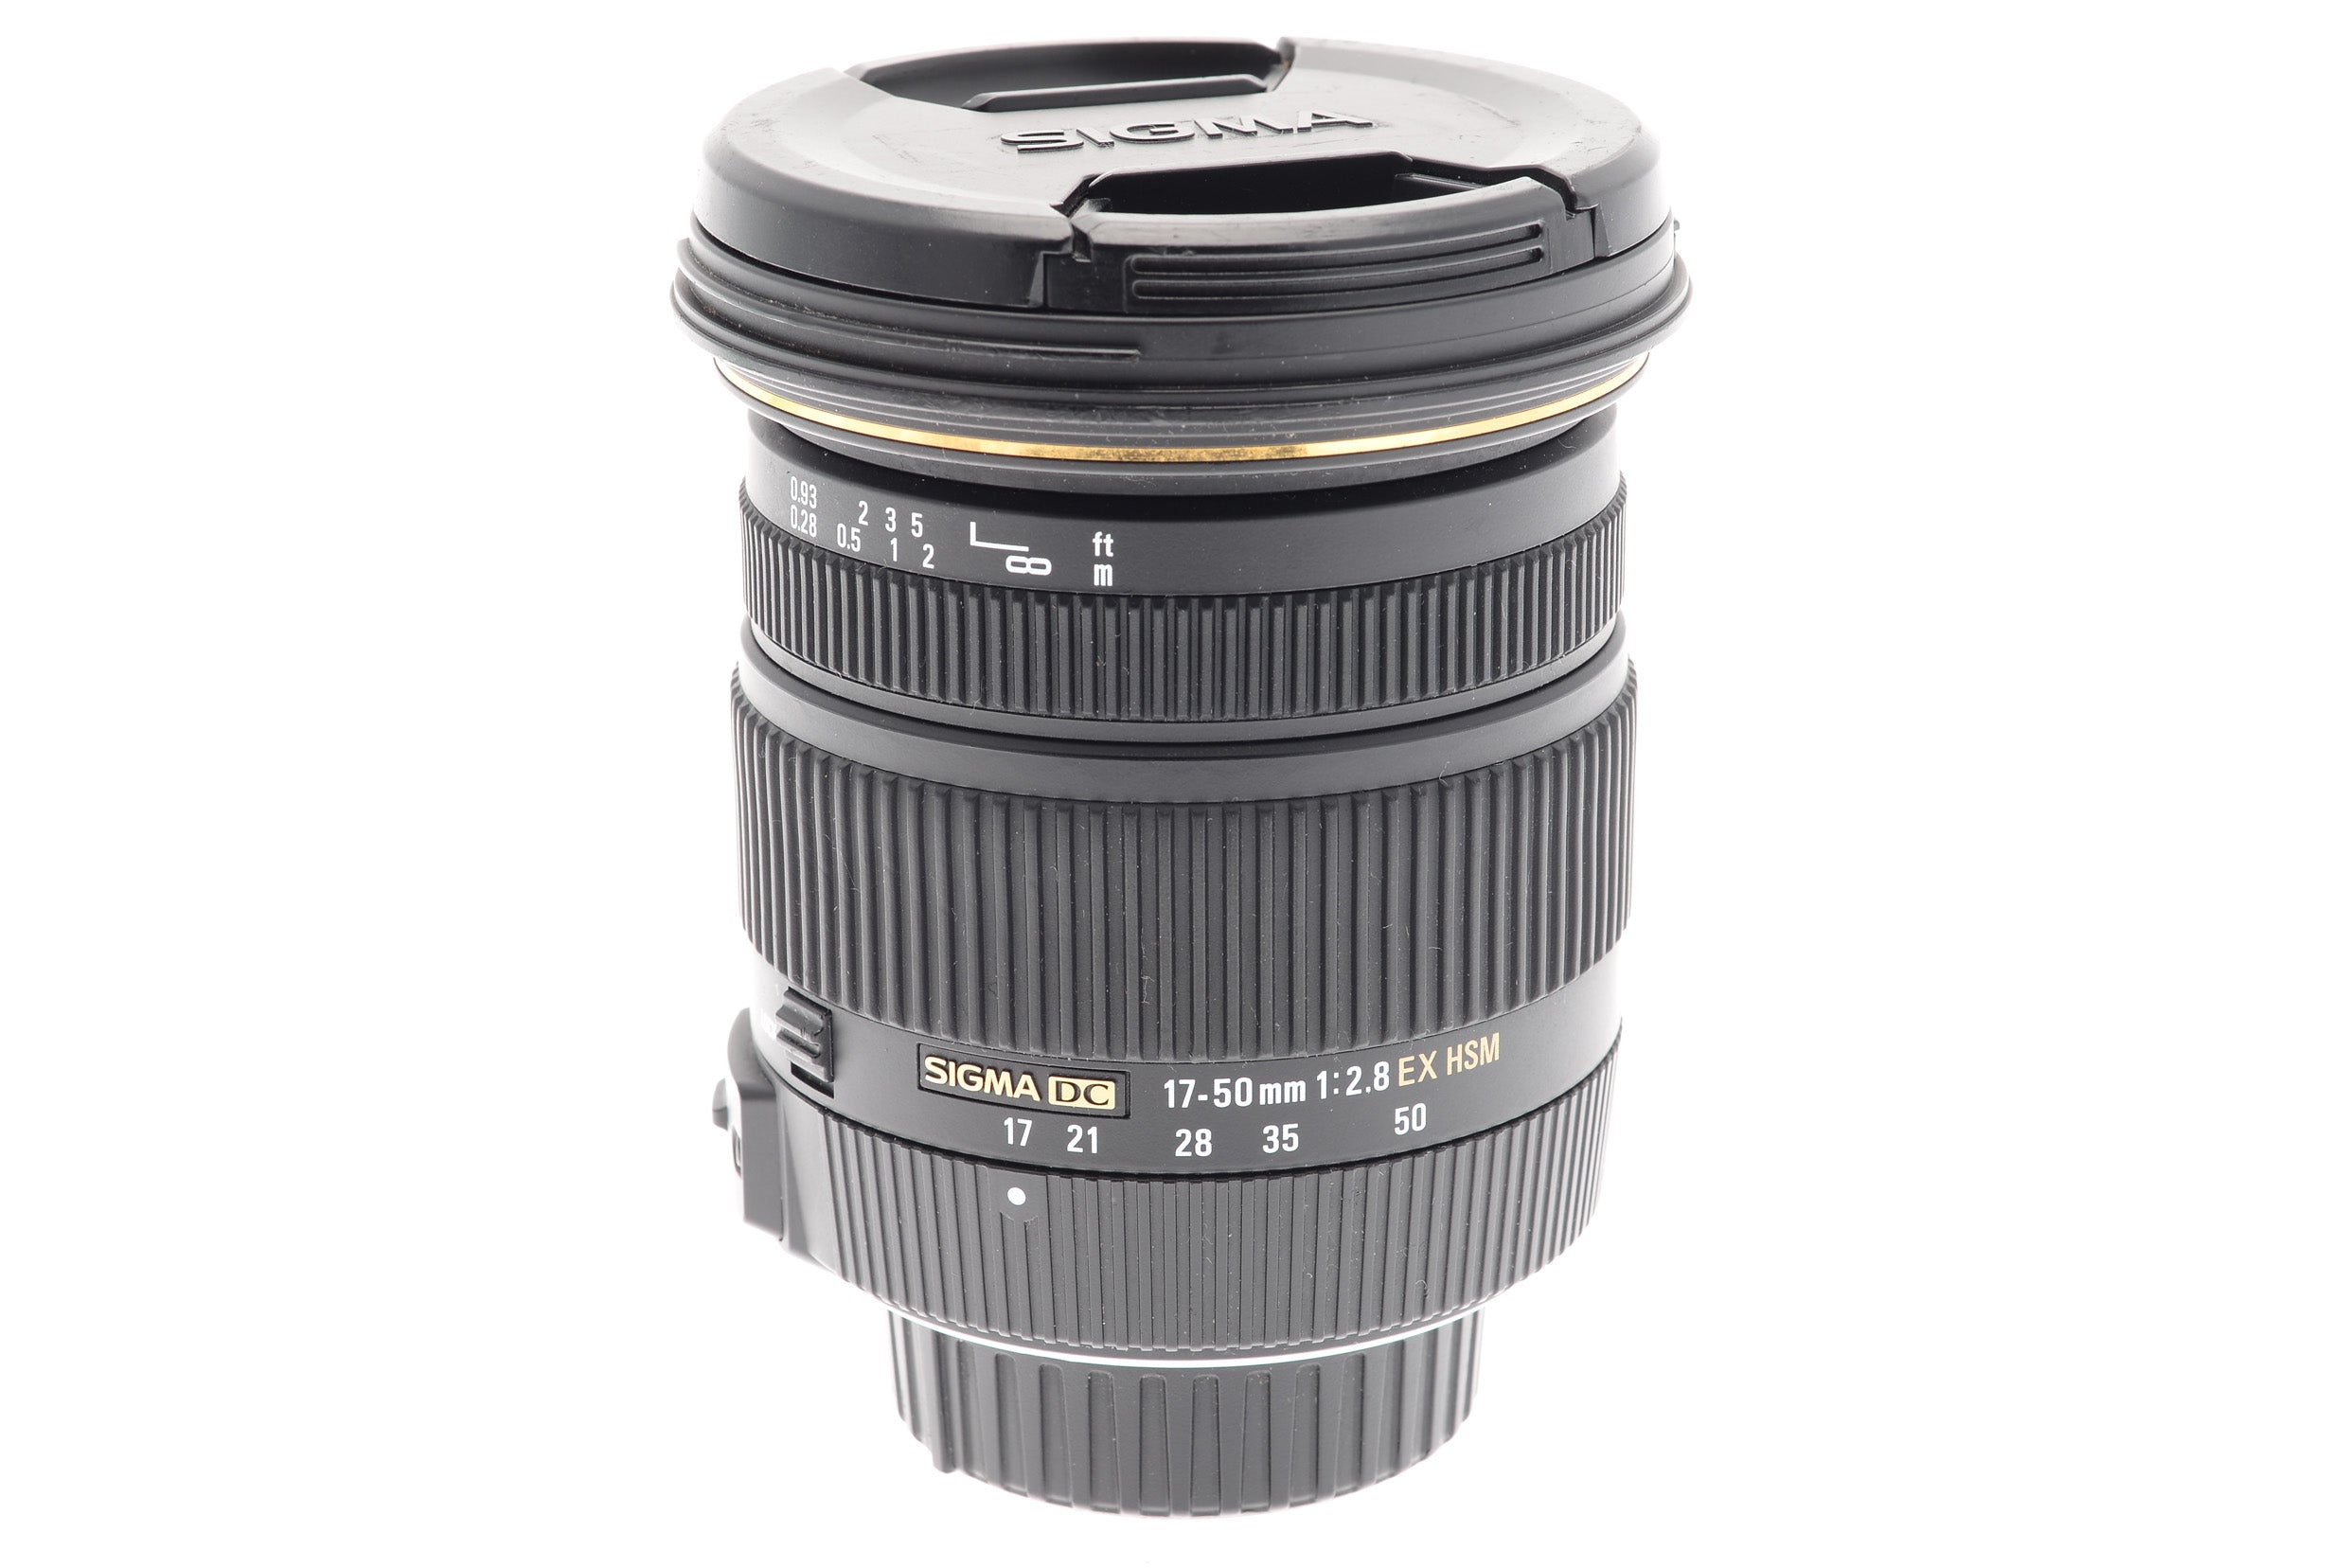 Sigma 17-50mm f2.8 EX DC OS HSM - Lens